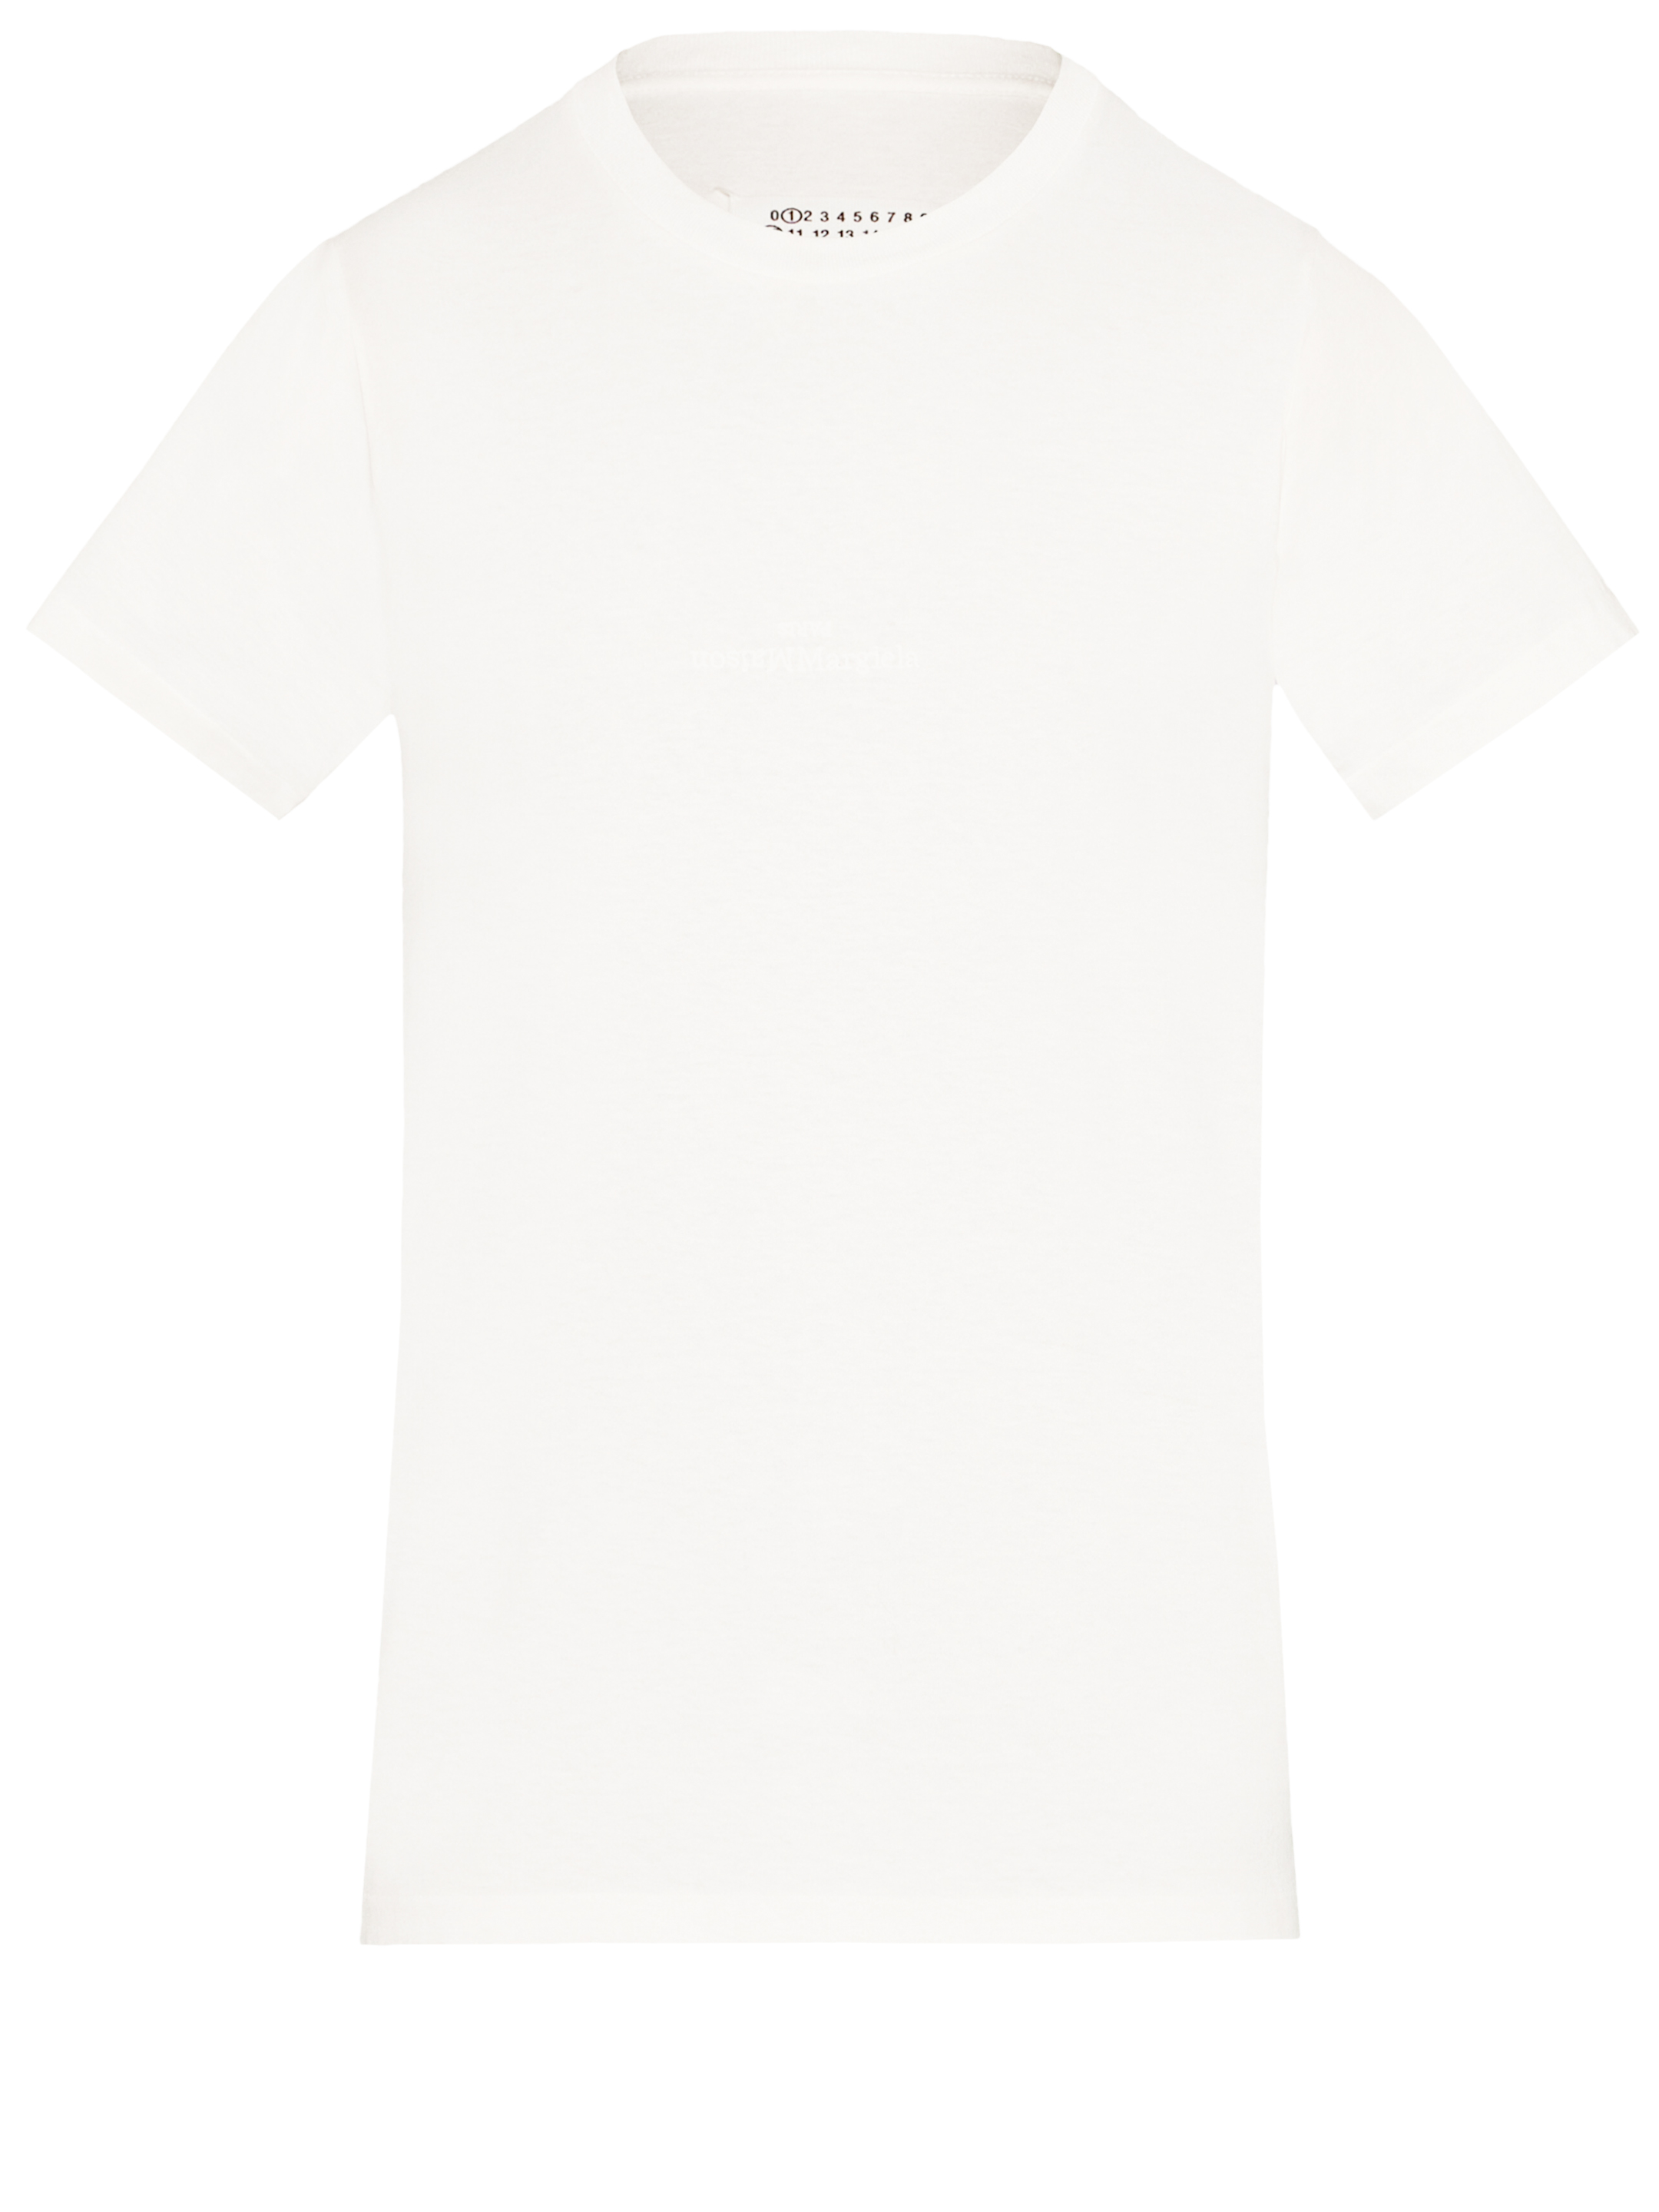 Футболка Maison Margiela Reverse logo, белый футболка из хлопкового джерси с короткими рукавами и вышитым логотипом fred perry розовый